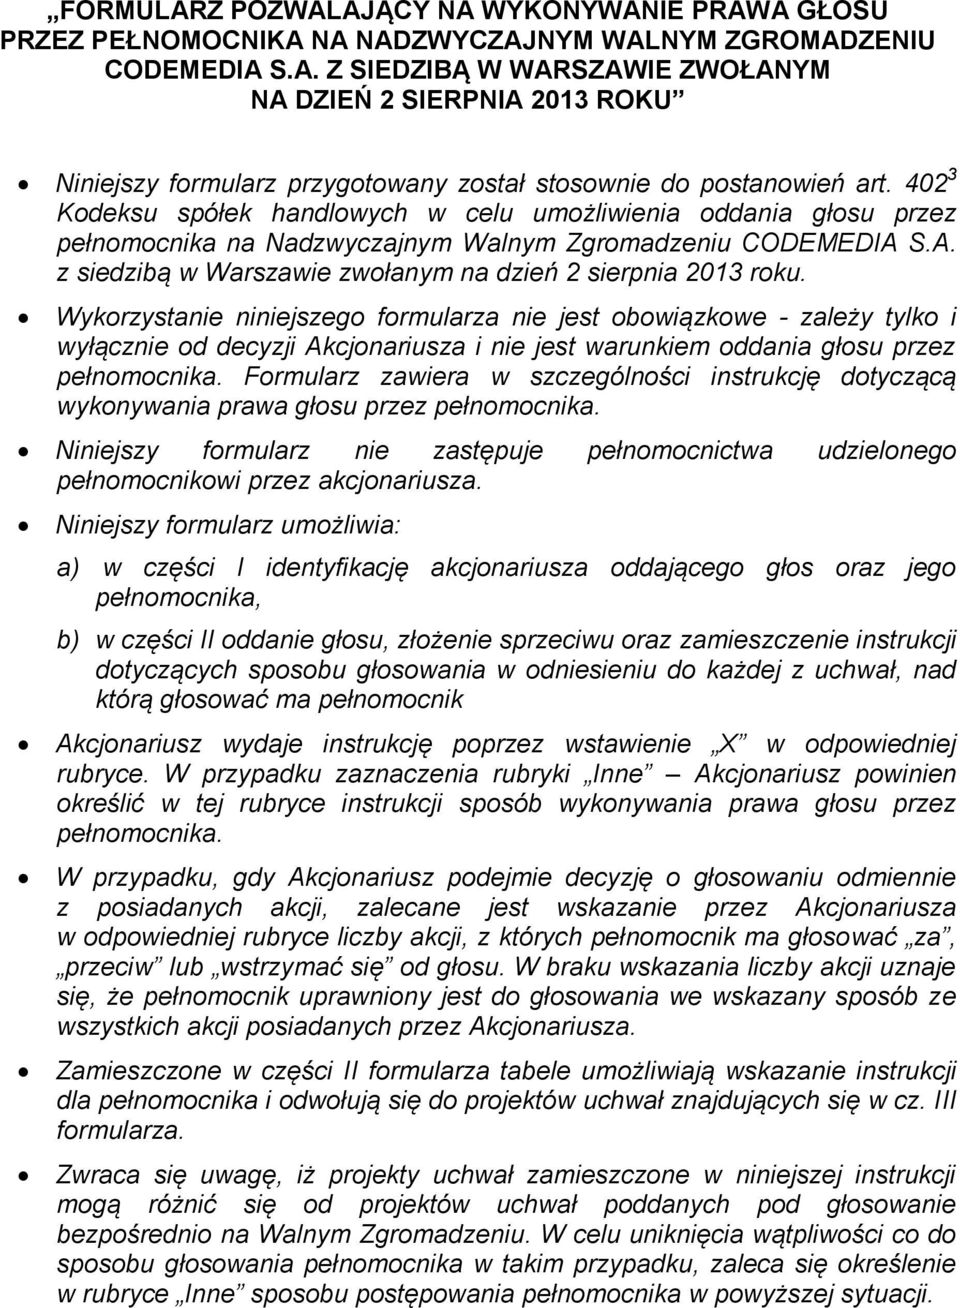 402 3 Kodeksu spółek handlowych w celu umożliwienia oddania głosu przez pełnomocnika na Nadzwyczajnym Walnym Zgromadzeniu z siedzibą w Warszawie zwołanym na dzień 2 sierpnia 2013 roku.